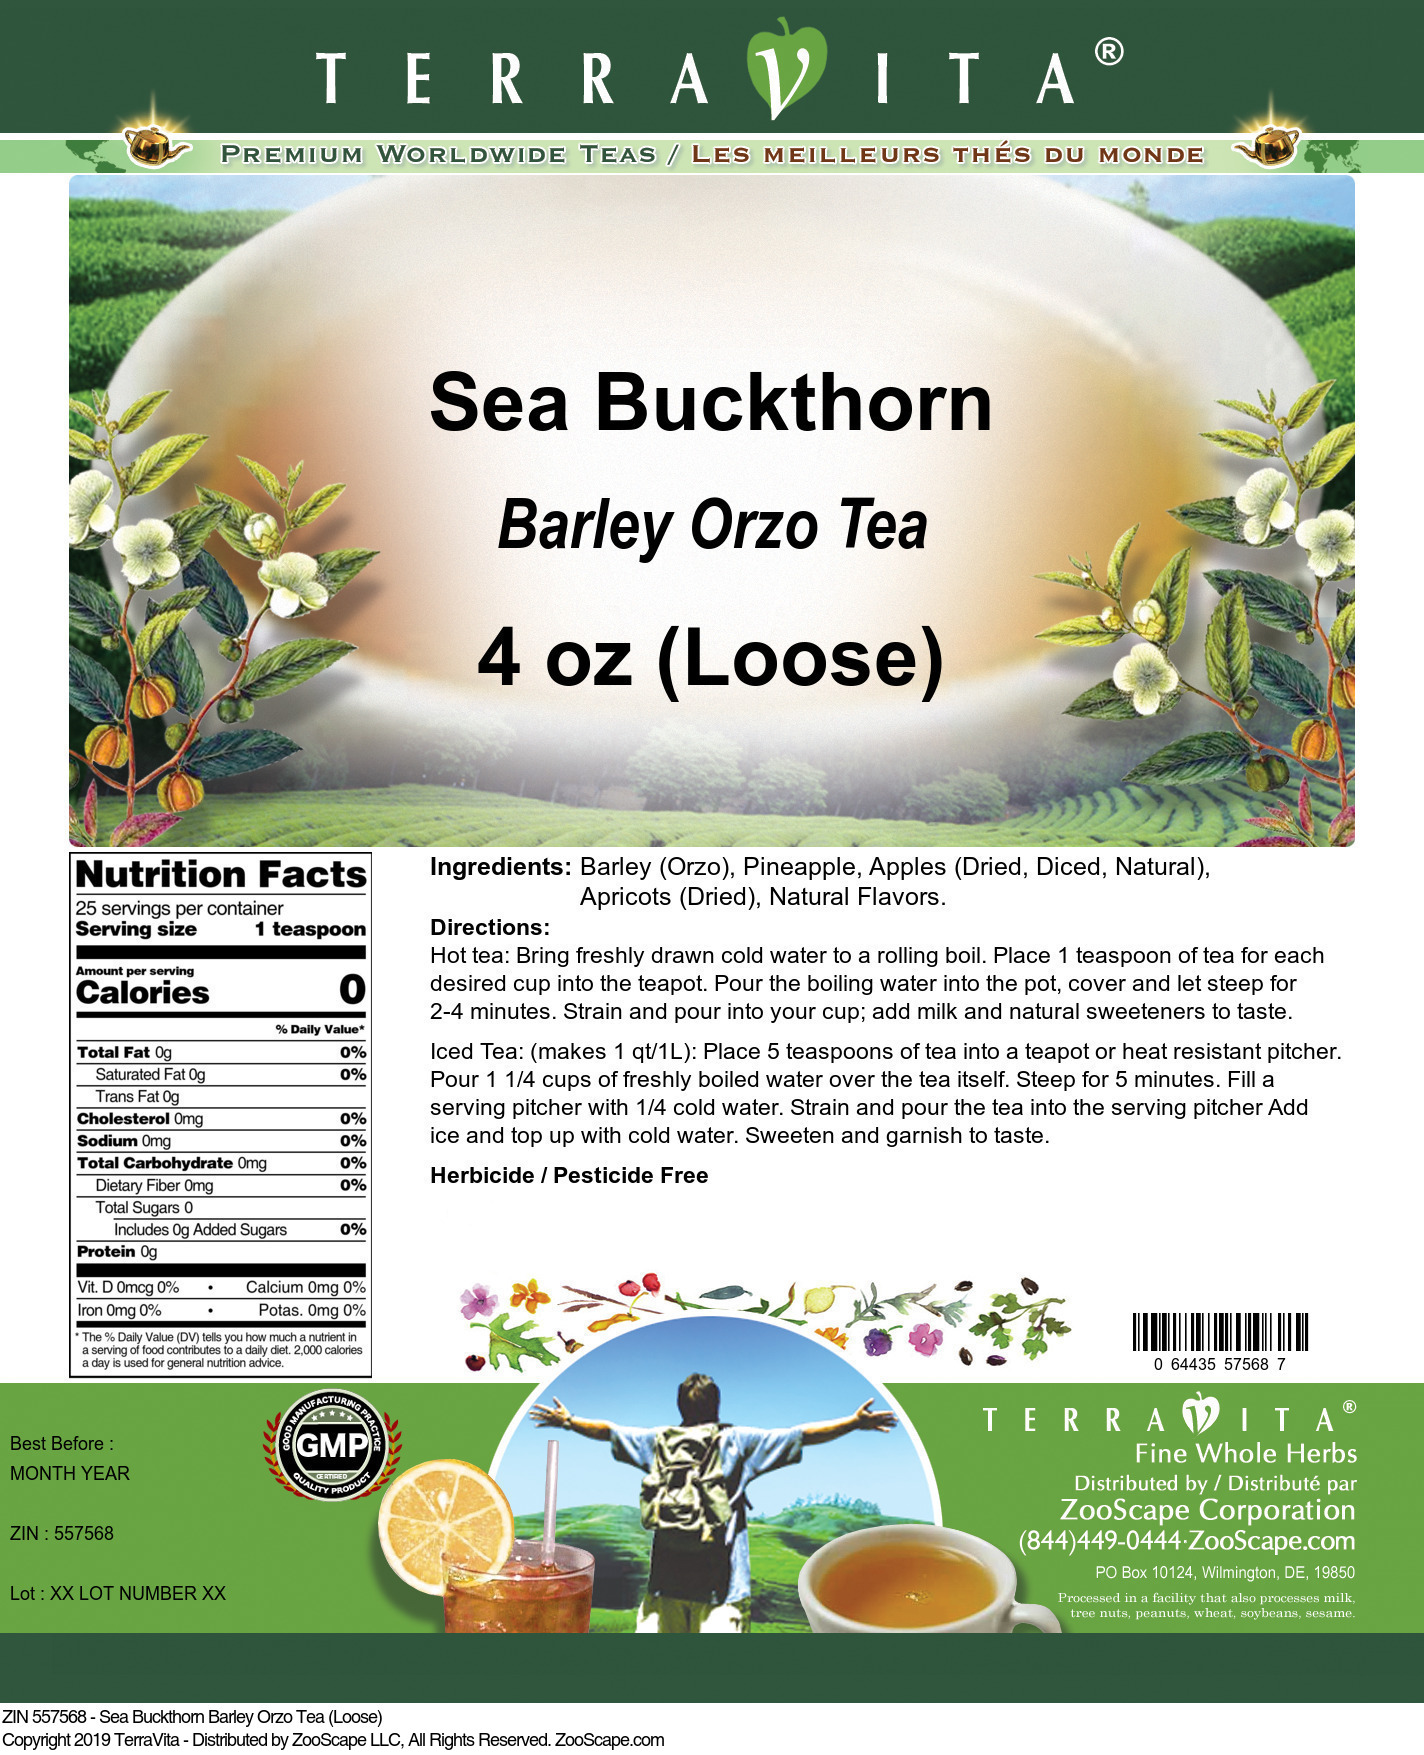 Sea Buckthorn Barley Orzo Tea (Loose) - Label